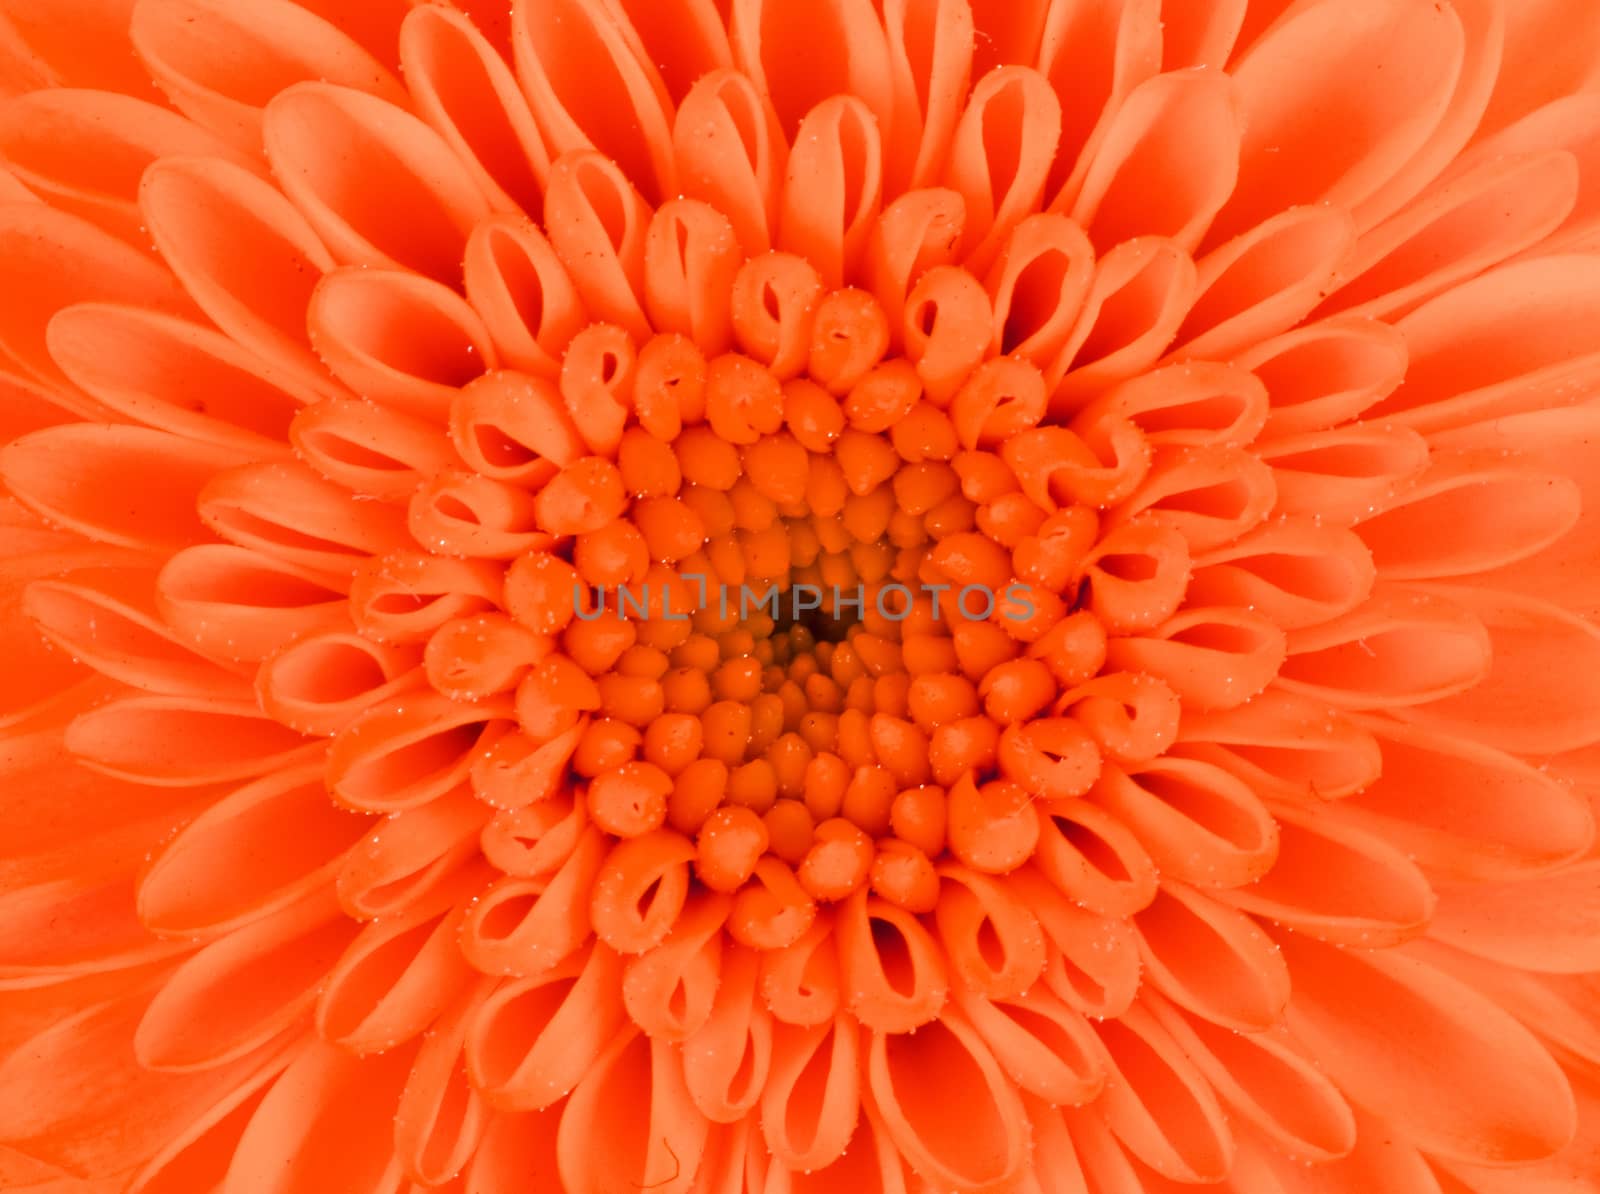 Fresh orange flower isolated on a white background